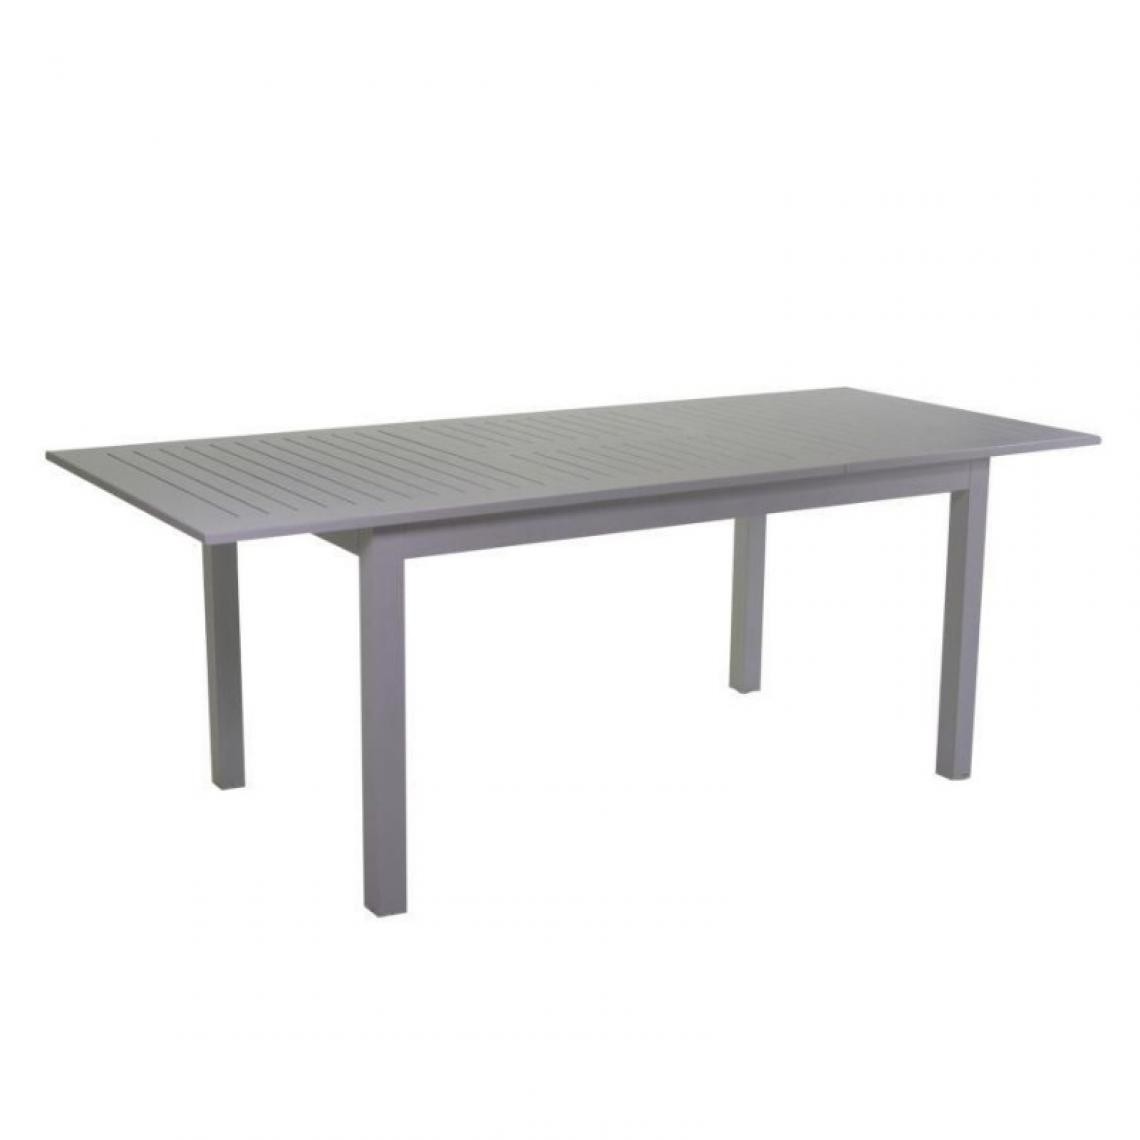 Webmarketpoint - Table extensible Sullivan en aluminium gris tourterelle - Tables de jardin